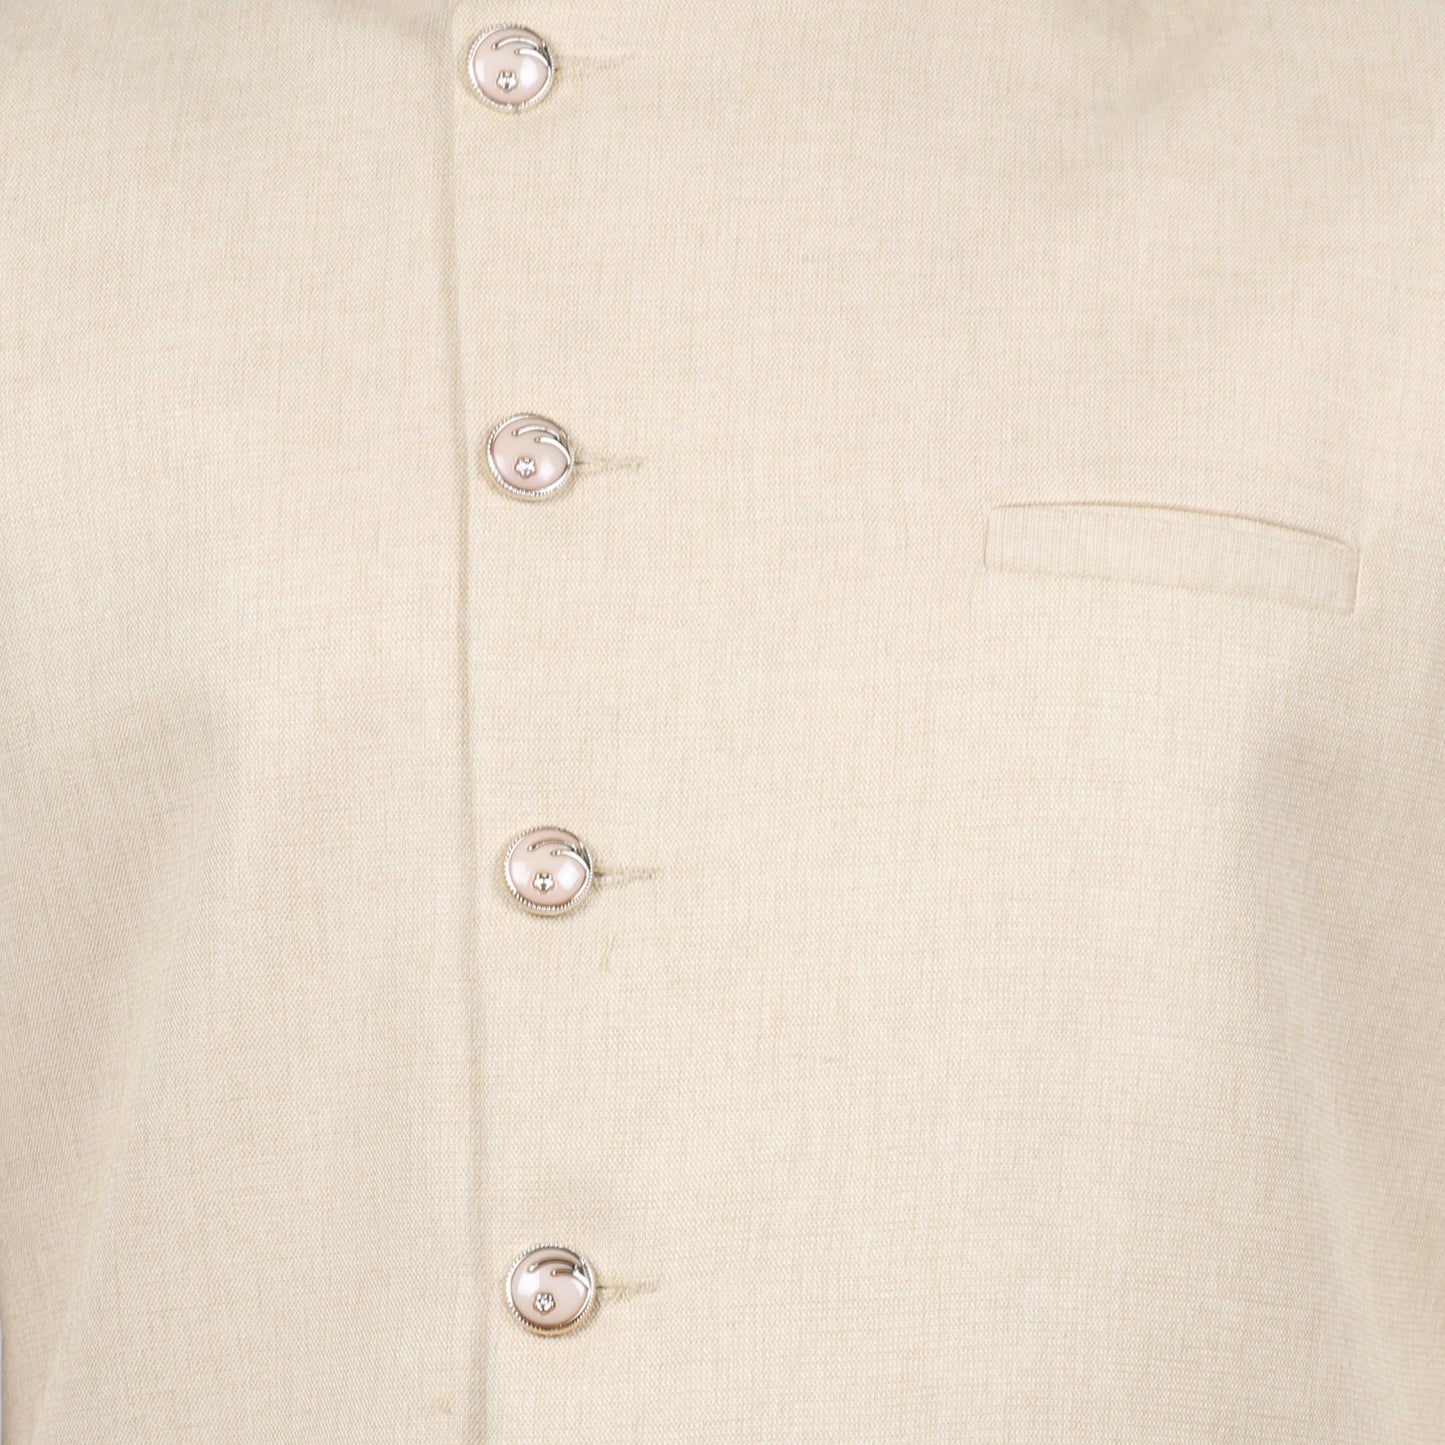 SG LEMAN Nehru Jackets For Men's (NJ-196)